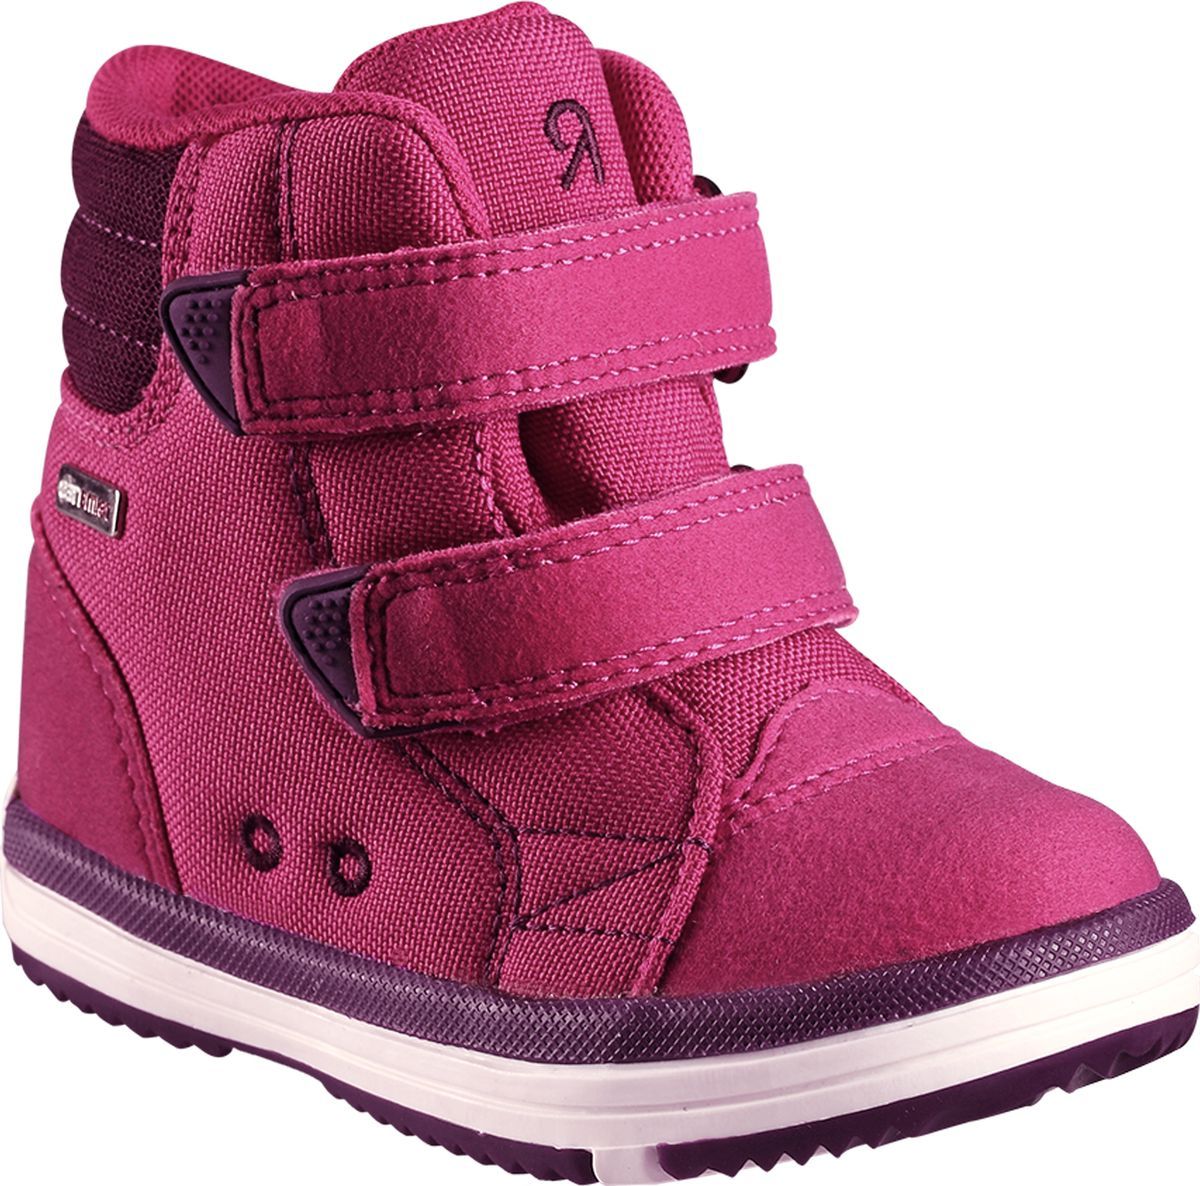 Ботинки детские Reima Patter, цвет: розовый. 5693443600. Размер 20